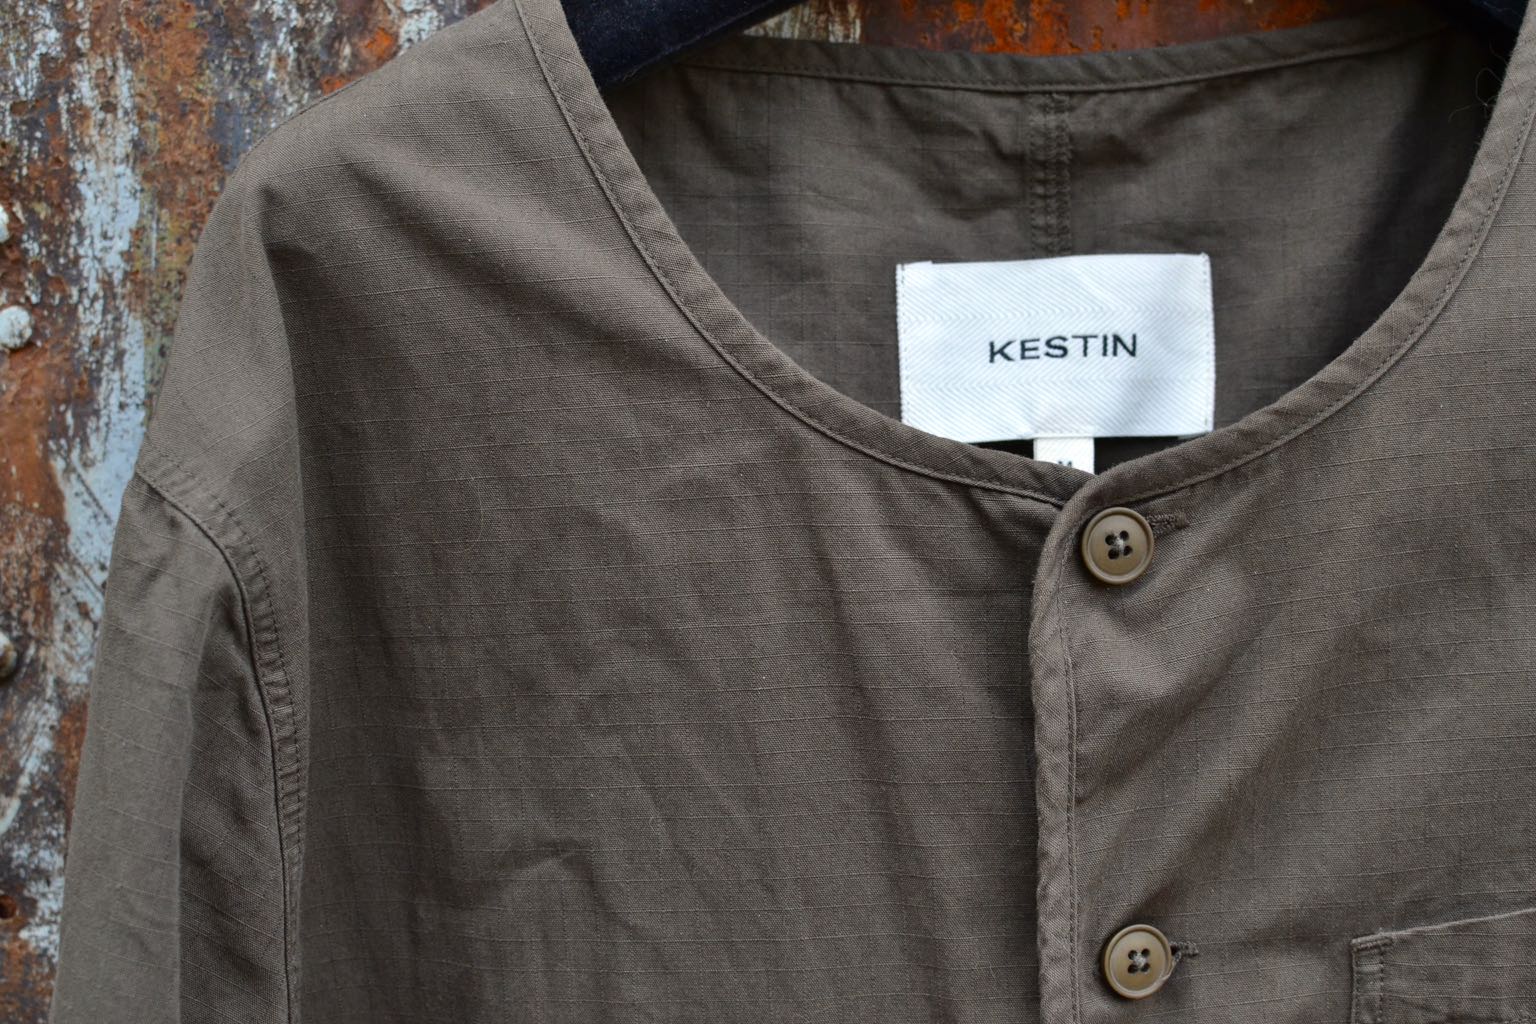 Kestin-hare-Neist overshirt in olive ripstop cotton - 1